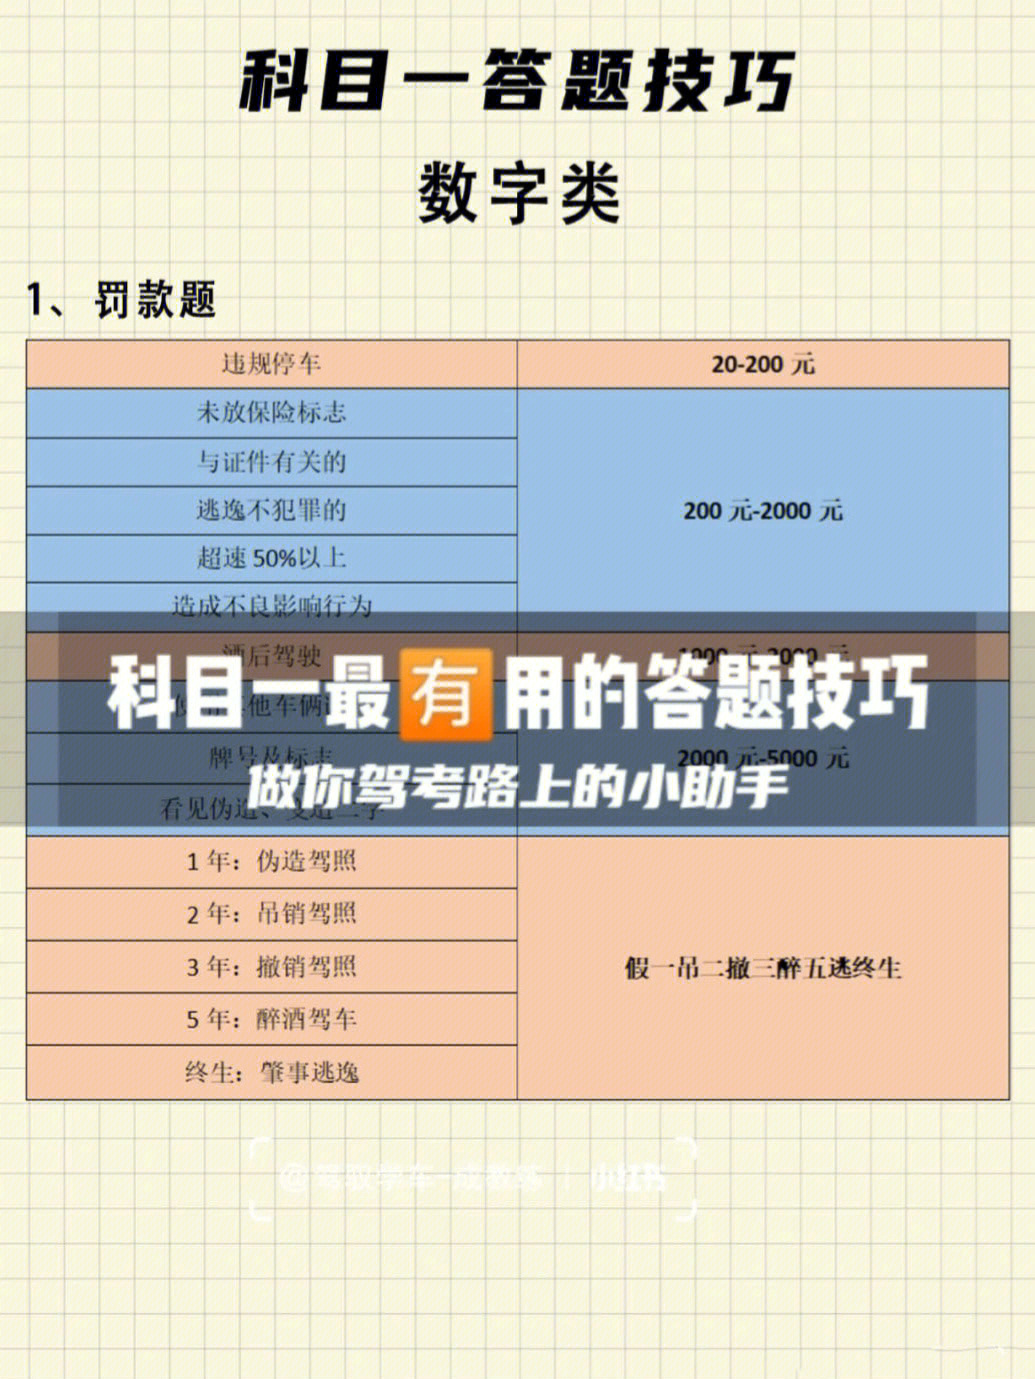 上海考驾照需要哪些证件_上海考驾照一般要多久_上海考驾照需要多少时间